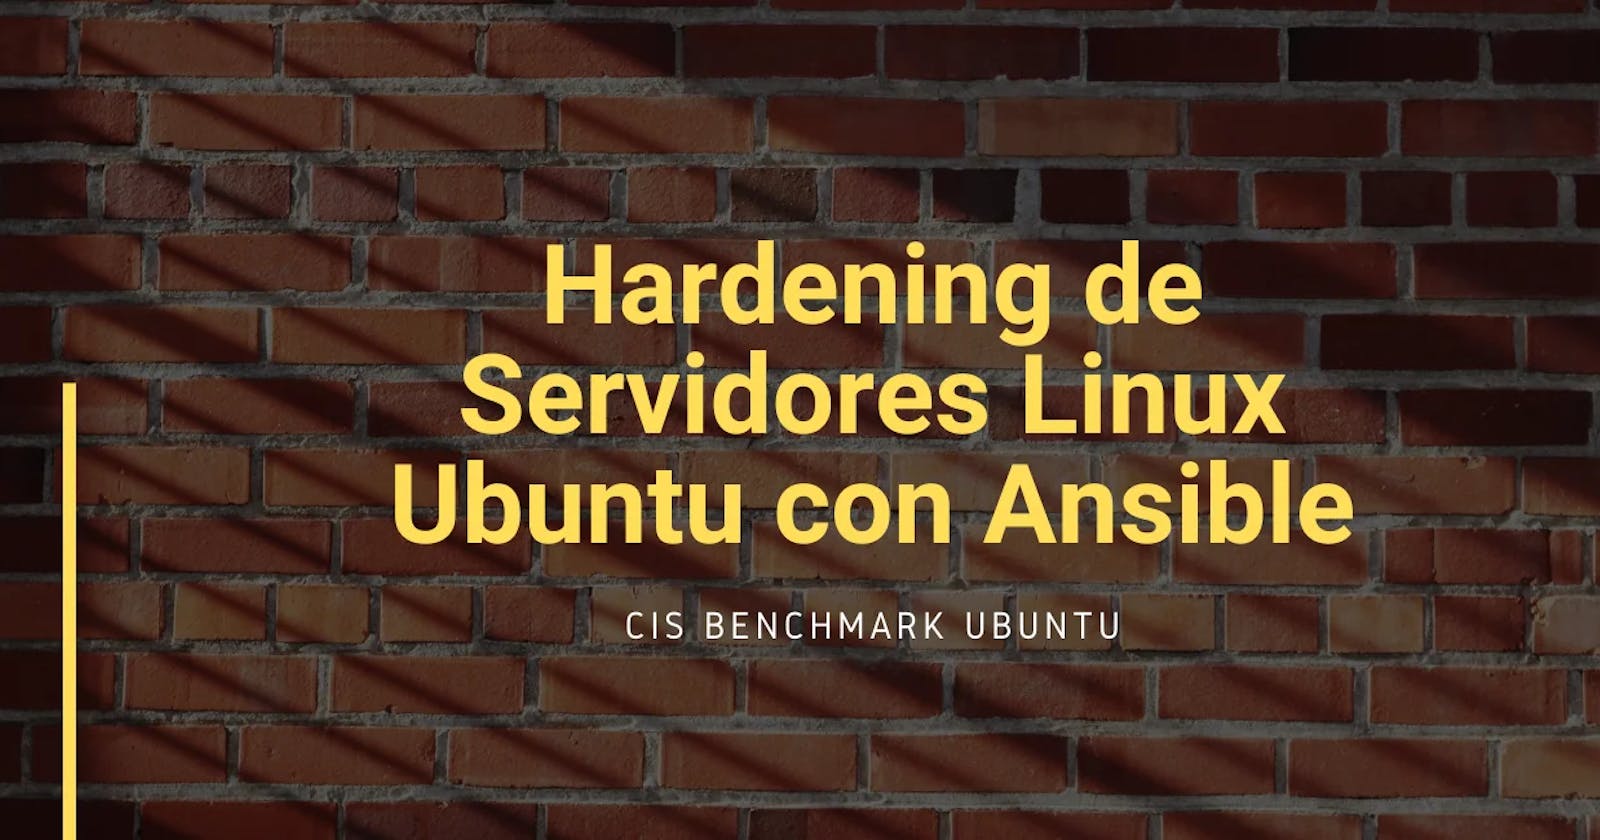 Hardening de Servidores Linux Ubuntu con Ansible